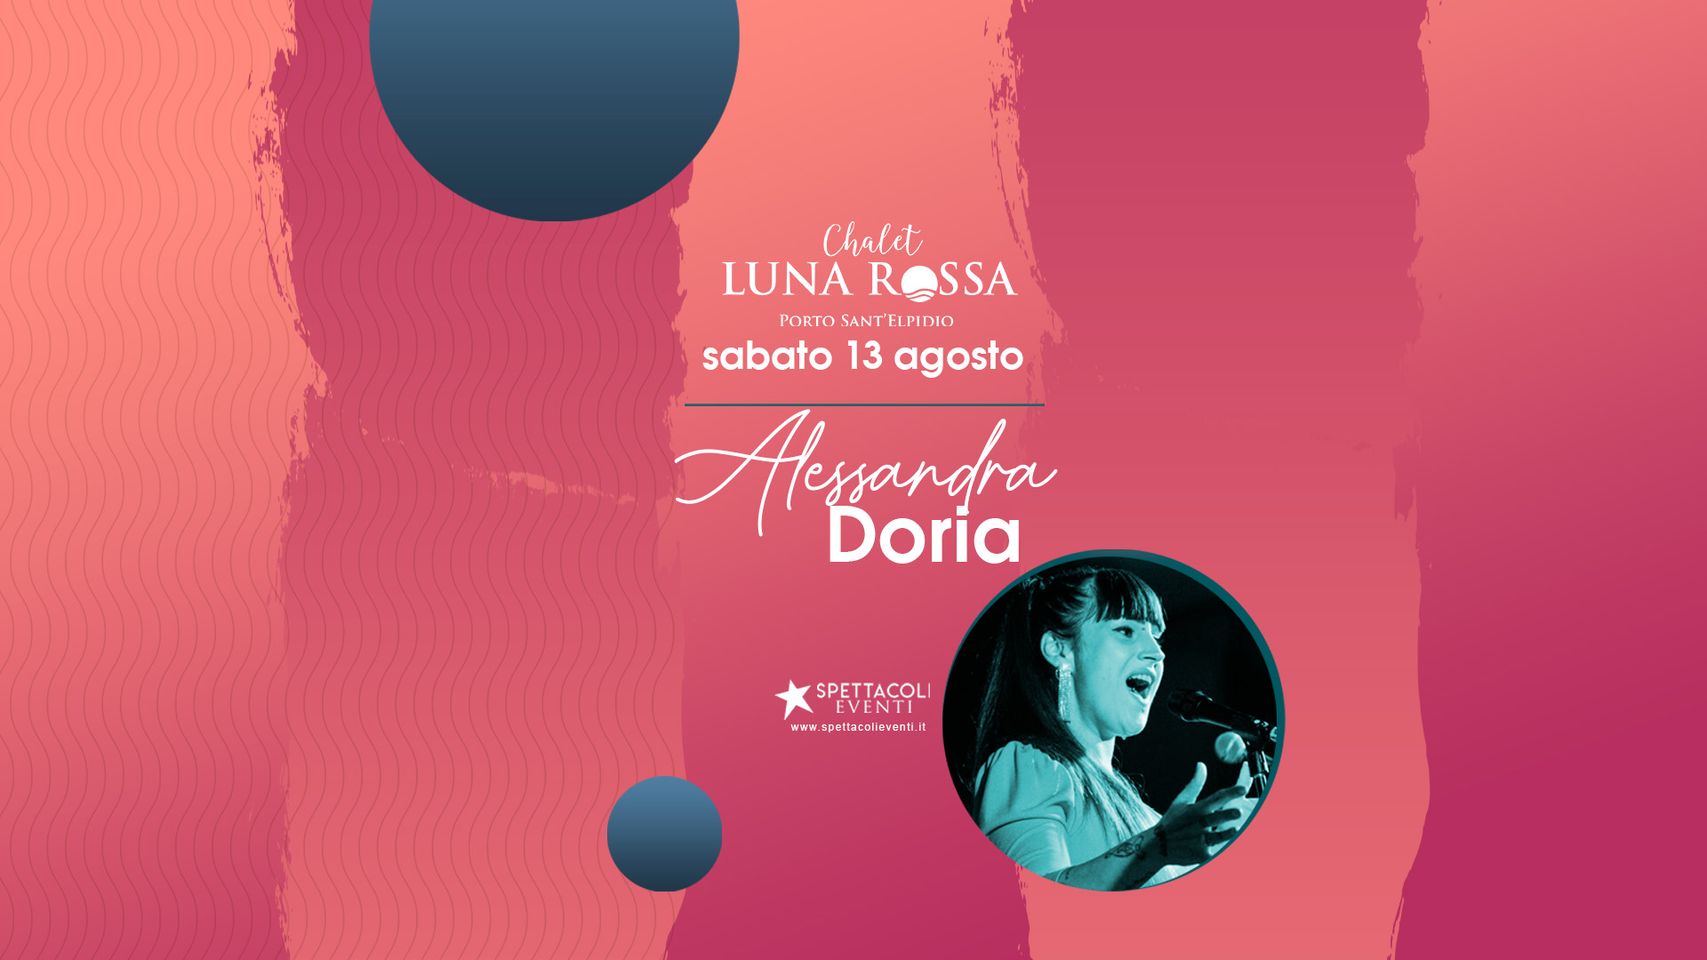 Alessandra Doria, cena in musica sabato 13 agosto